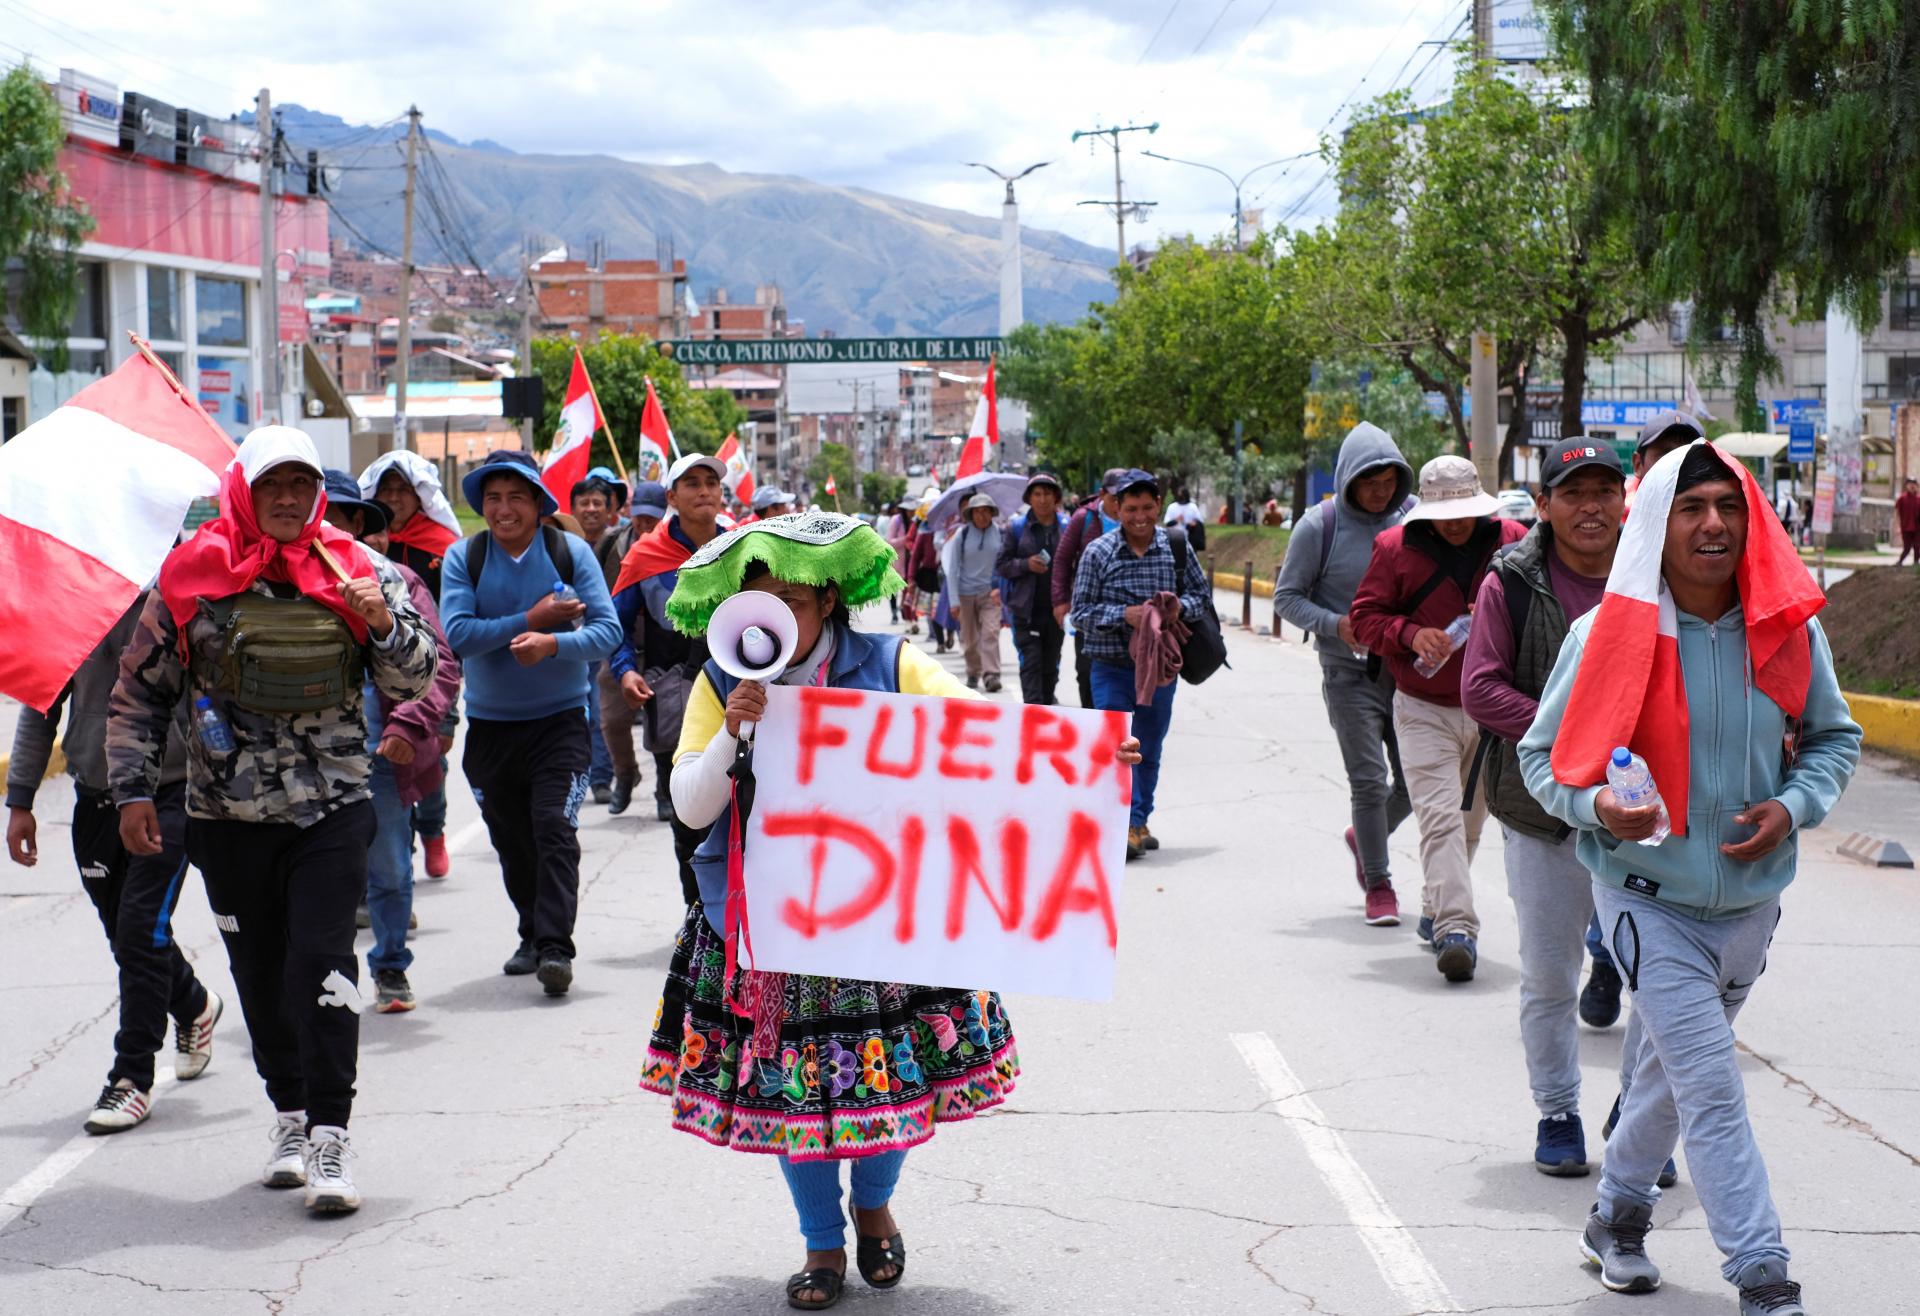 Protesty v Peru pokračujú, upokojenie sa nechystá. Kongres odmietol už tretí návrh na predčasné voľby